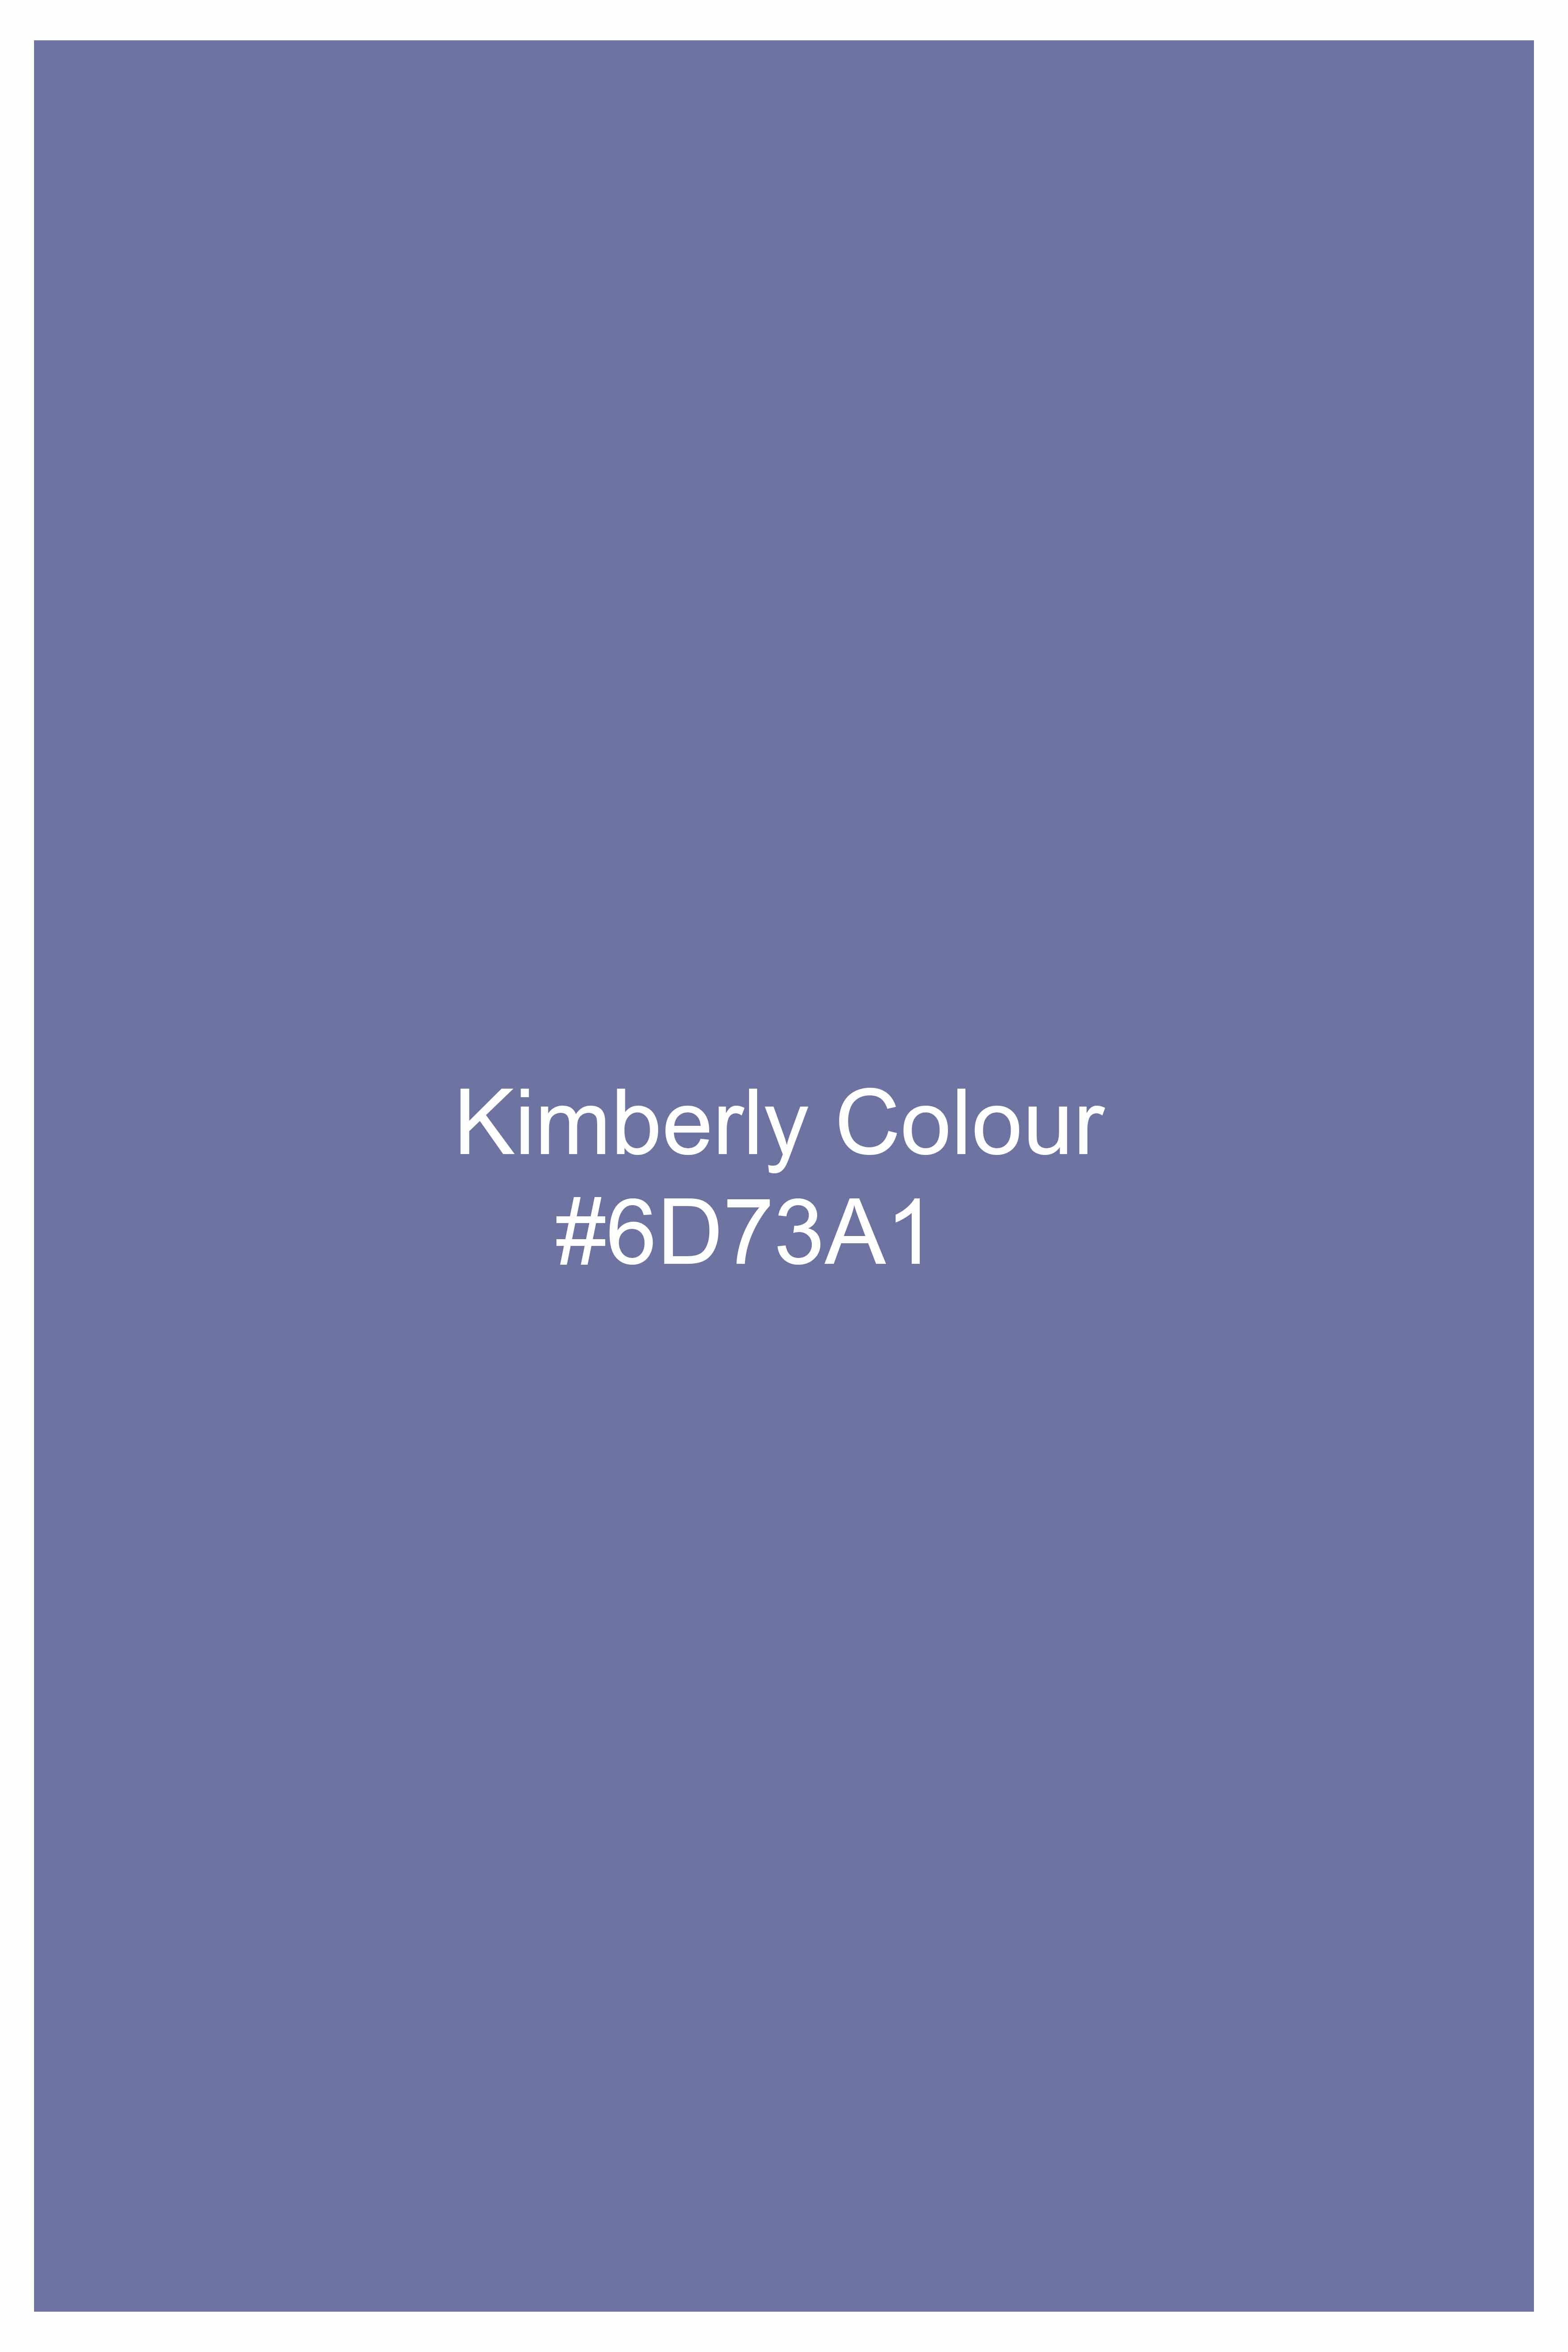 Kimberly Blue Dobby Textured Premium Giza Cotton Shirt 11589-CA-38, 11589-CA-H-38, 11589-CA-39, 11589-CA-H-39, 11589-CA-40, 11589-CA-H-40, 11589-CA-42, 11589-CA-H-42, 11589-CA-44, 11589-CA-H-44, 11589-CA-46, 11589-CA-H-46, 11589-CA-48, 11589-CA-H-48, 11589-CA-50, 11589-CA-H-50, 11589-CA-52, 11589-CA-H-52